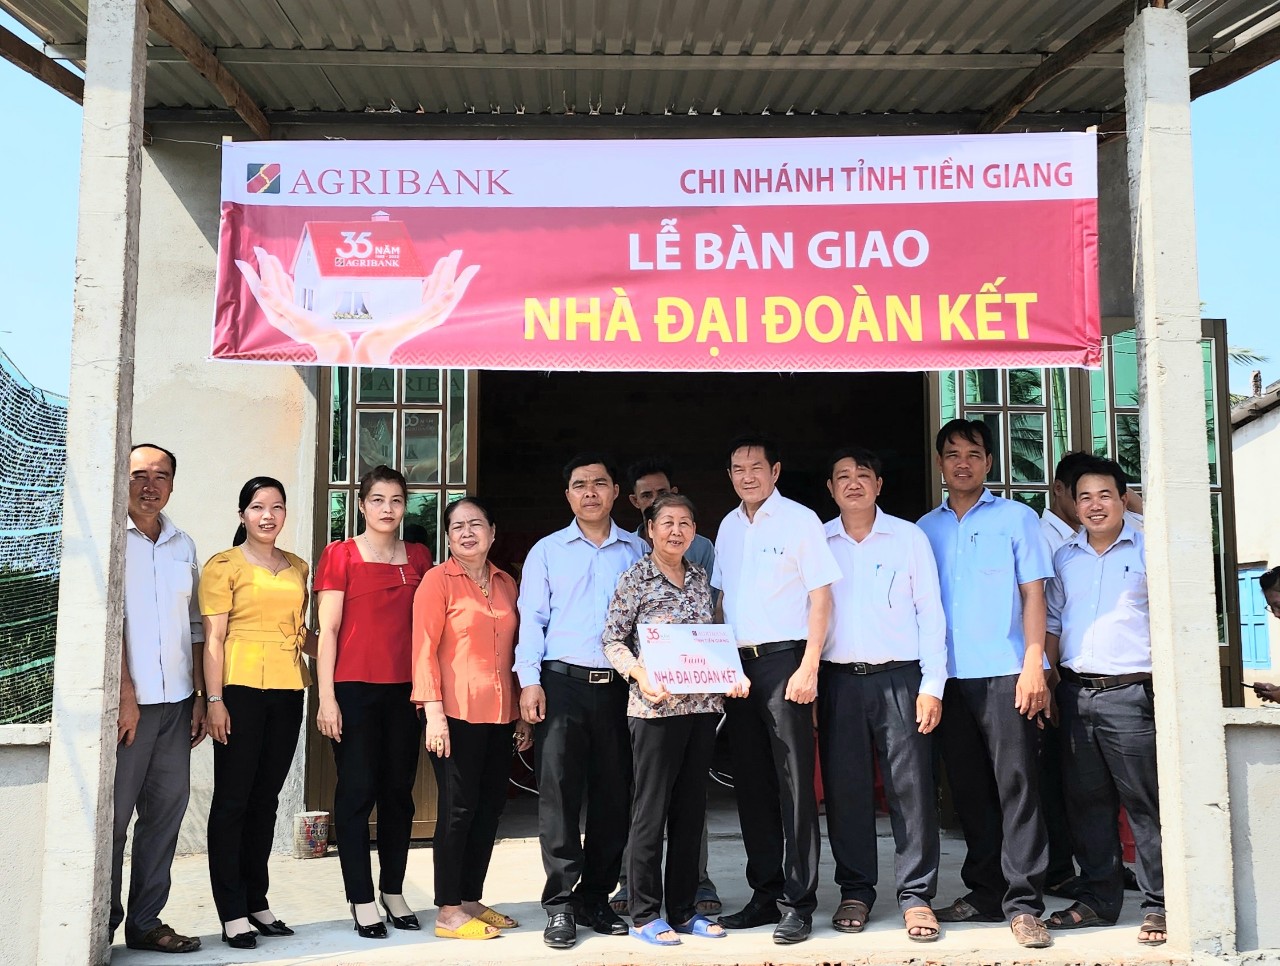 Agribank Tiền Giang bàn giao 3 căn nhà đại đoàn kết chào mừng 15 năm thành lập huyện Tân Phú Đông  - Ảnh 3.